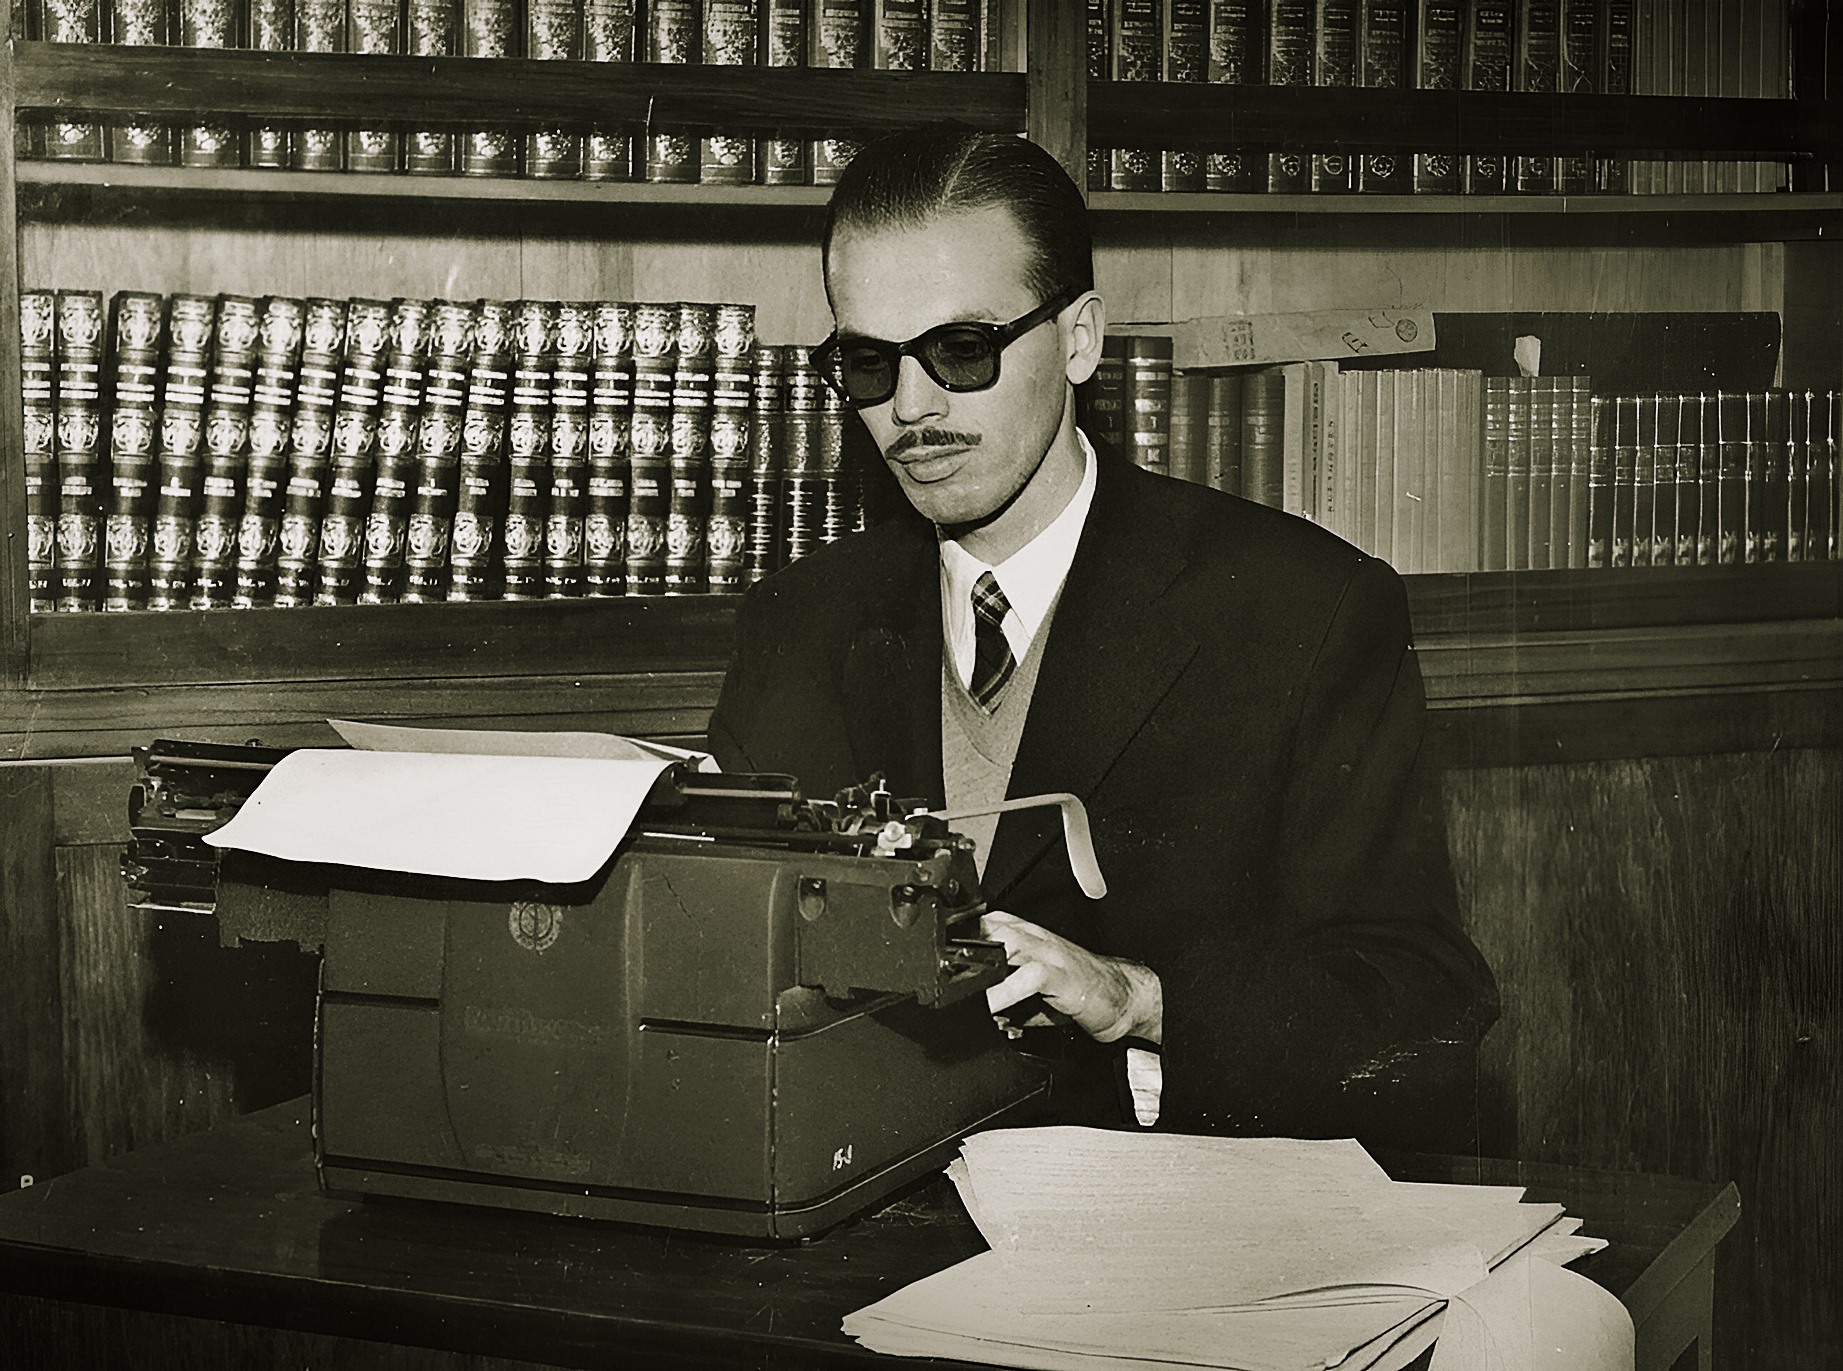 Imagem: Reprodução/Divulgação; Arquivo pessoal (UOL); R.F. Lucchetti aos 26 anos, escrevendo em máquina de escrever, em 1956 (Imagem com realce e filtros)